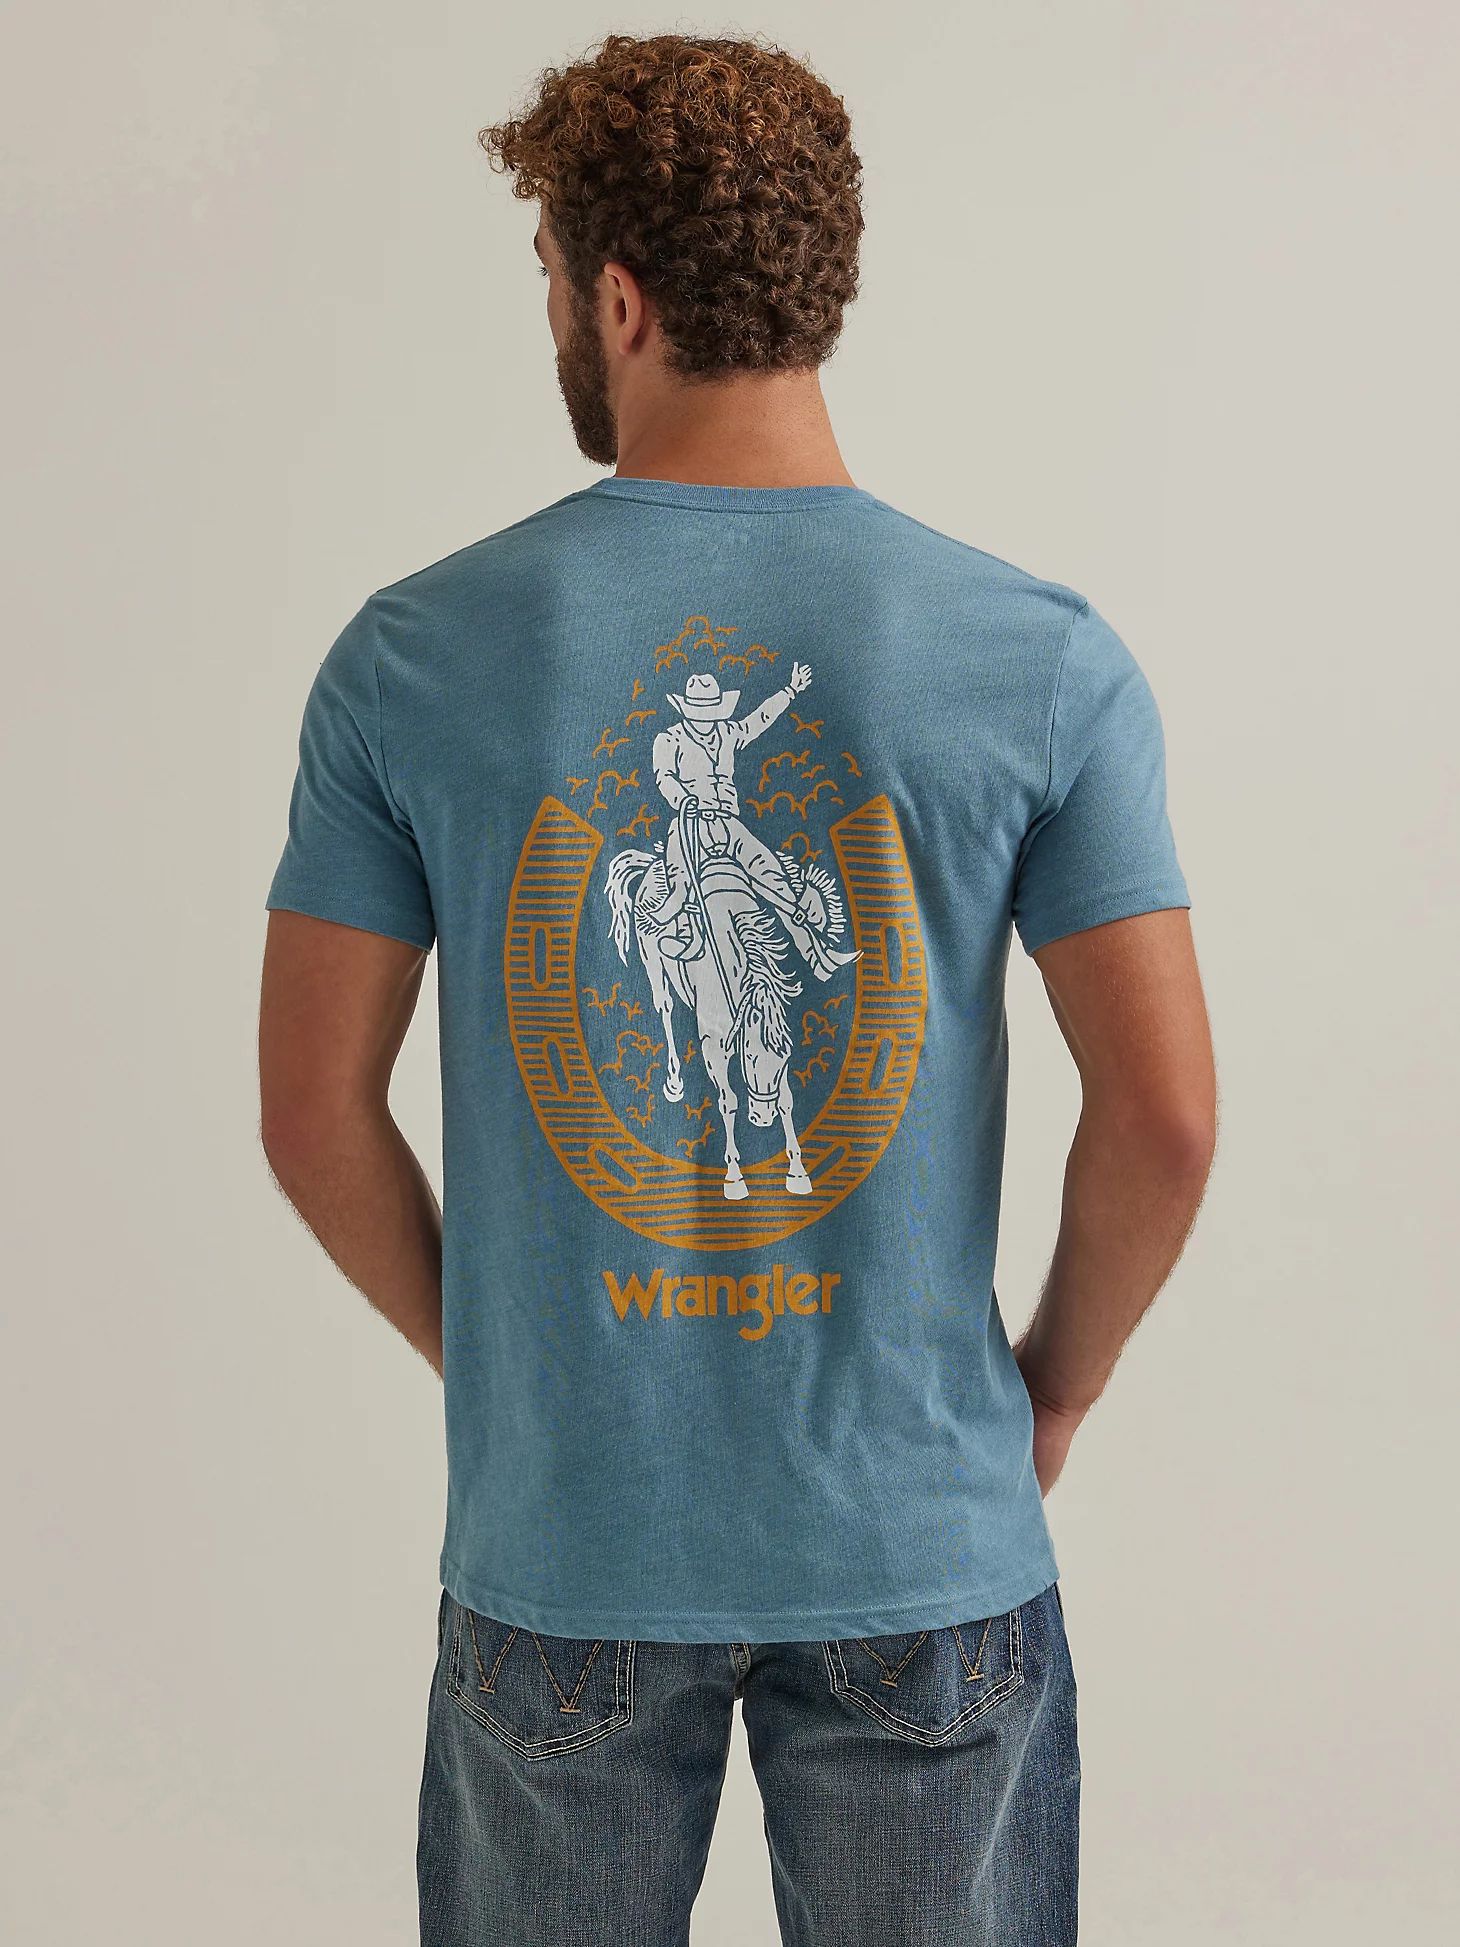 Men's Wrangler Back Graphic T-Shirt in Provincial Blue | Wrangler